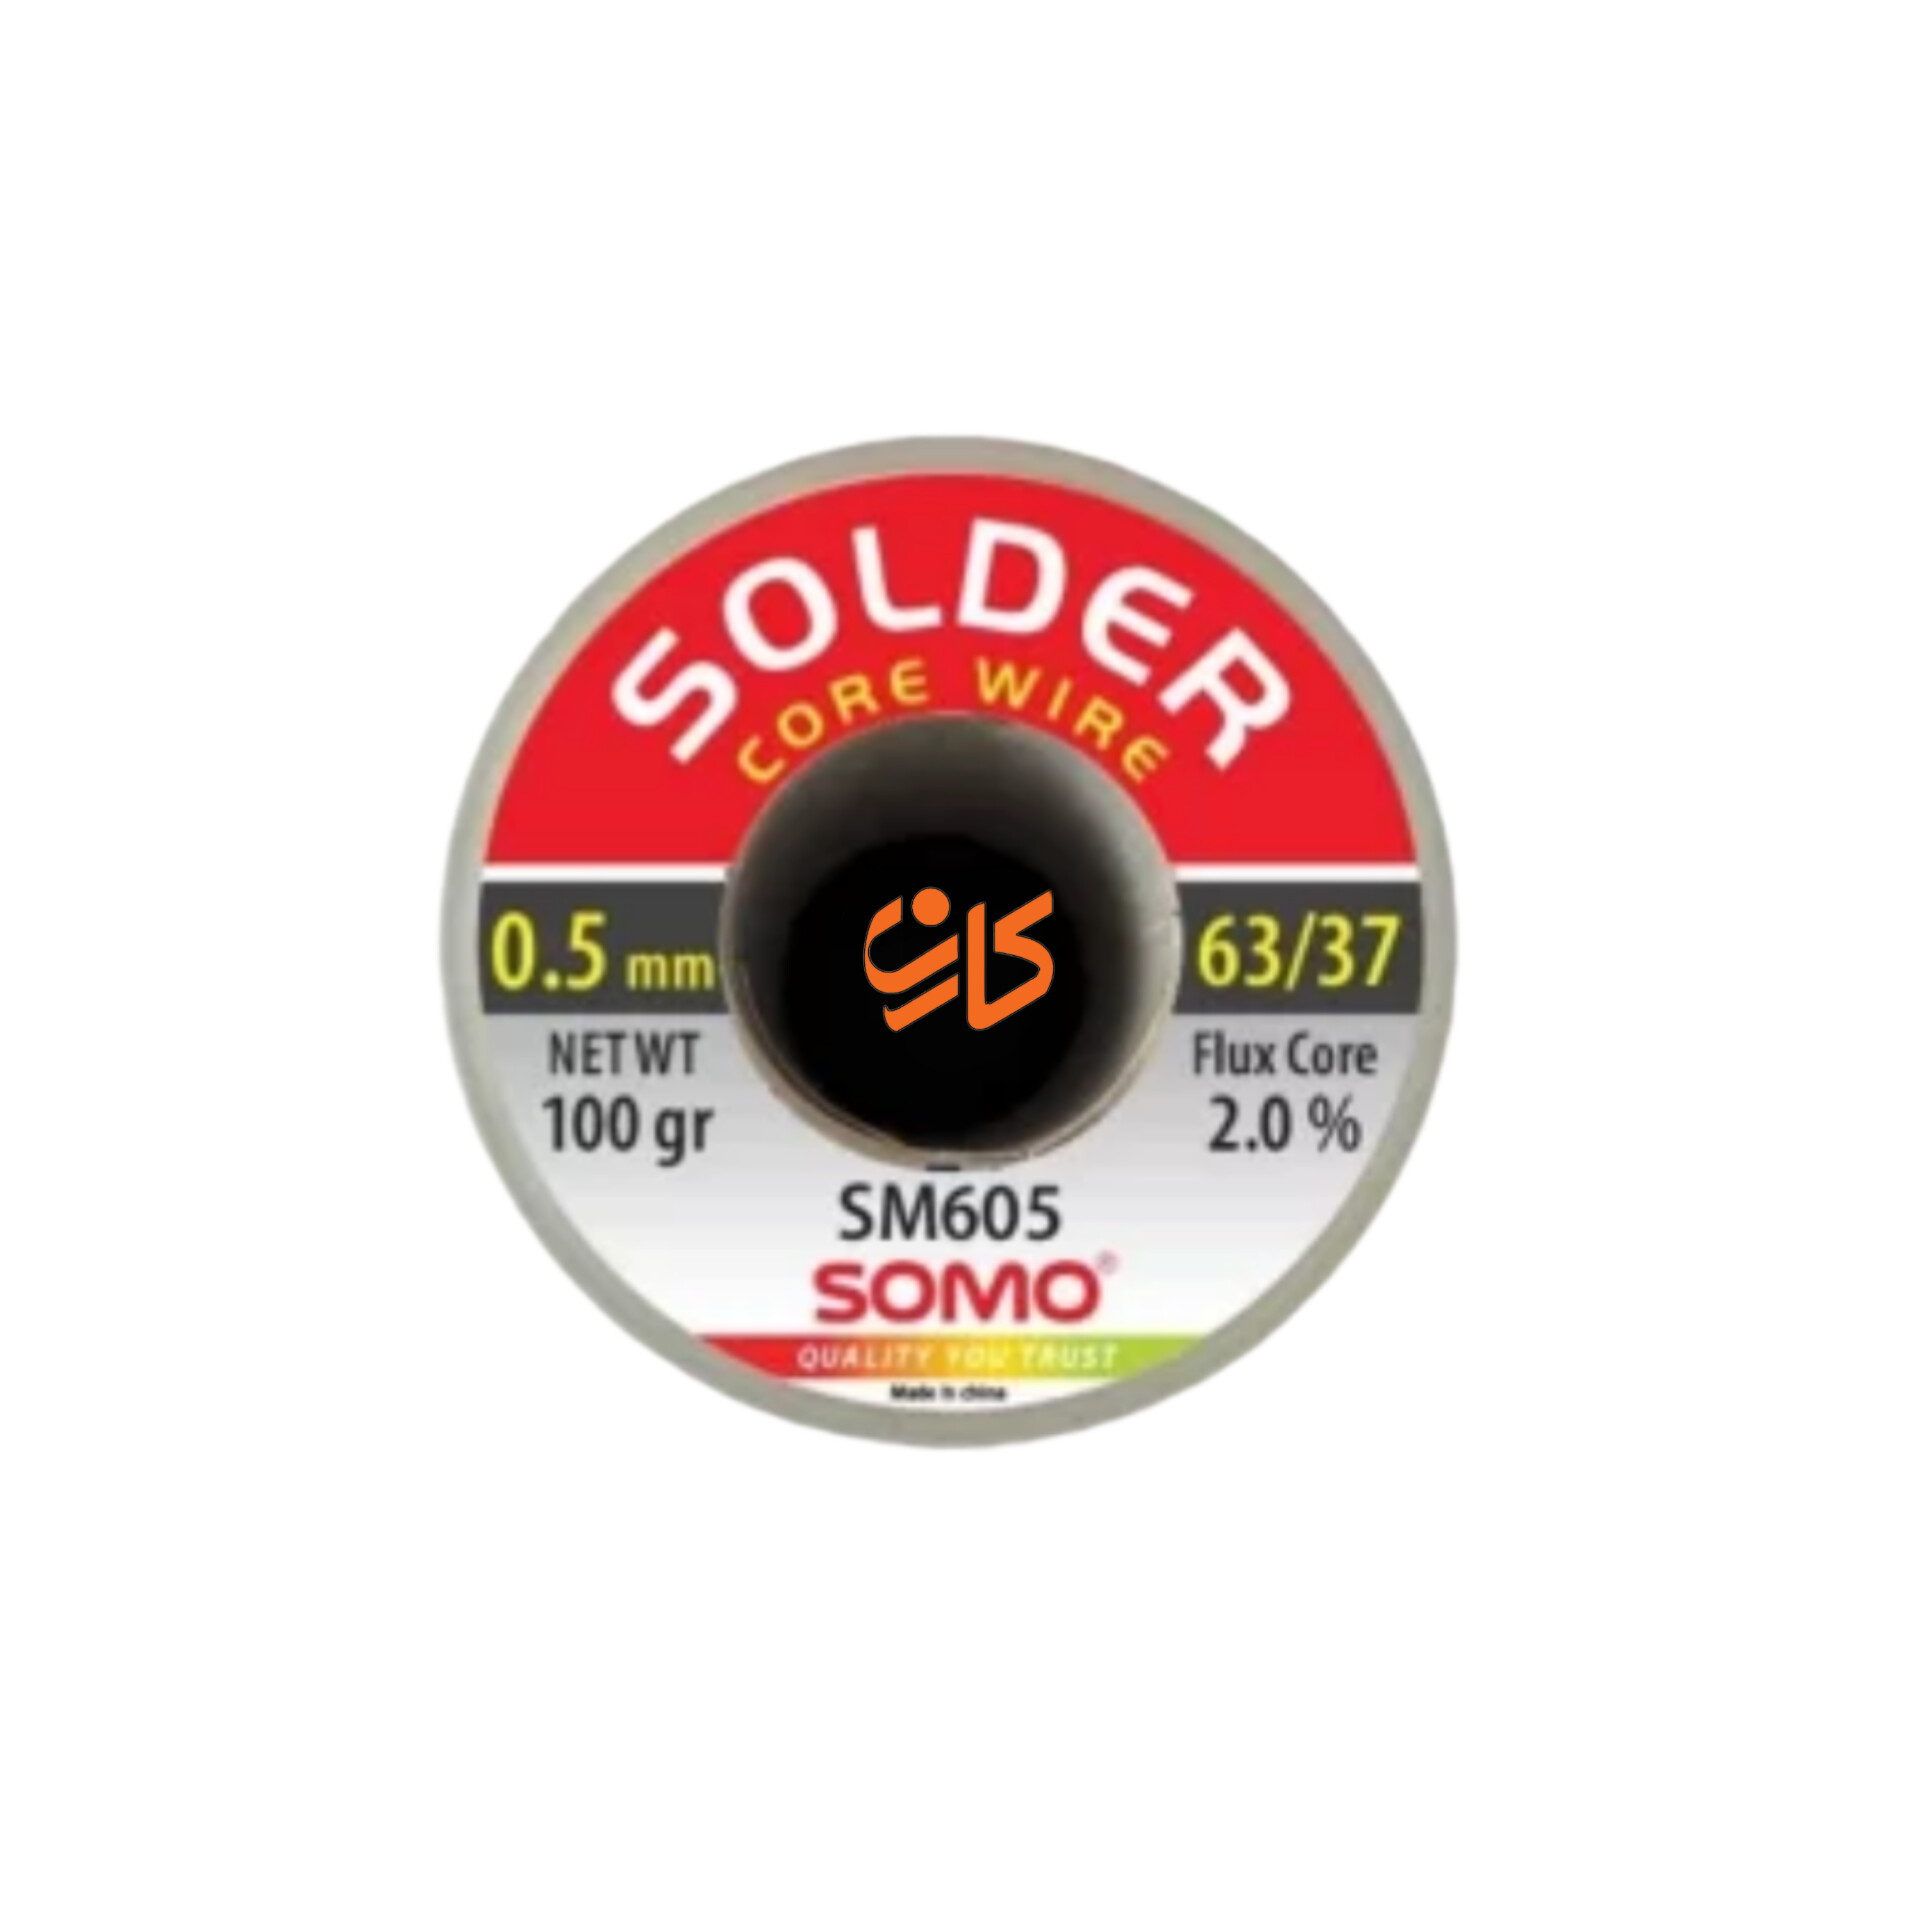 سیم لحیم سومو 0.5 میلیمتر 100 گرم مدل SOMO SM605